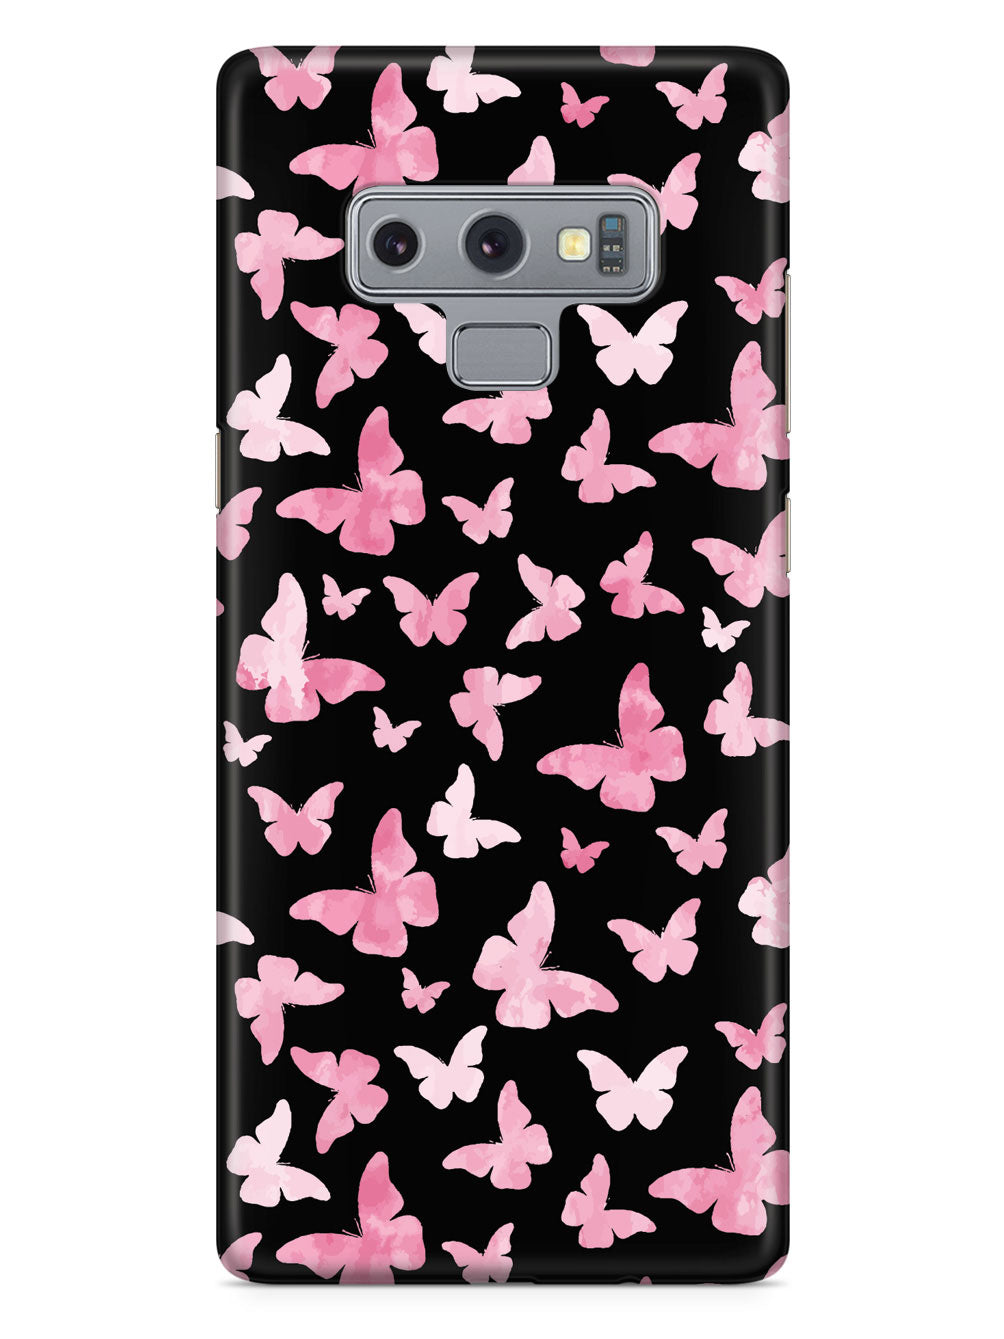 Pink Butterflies - Black Case